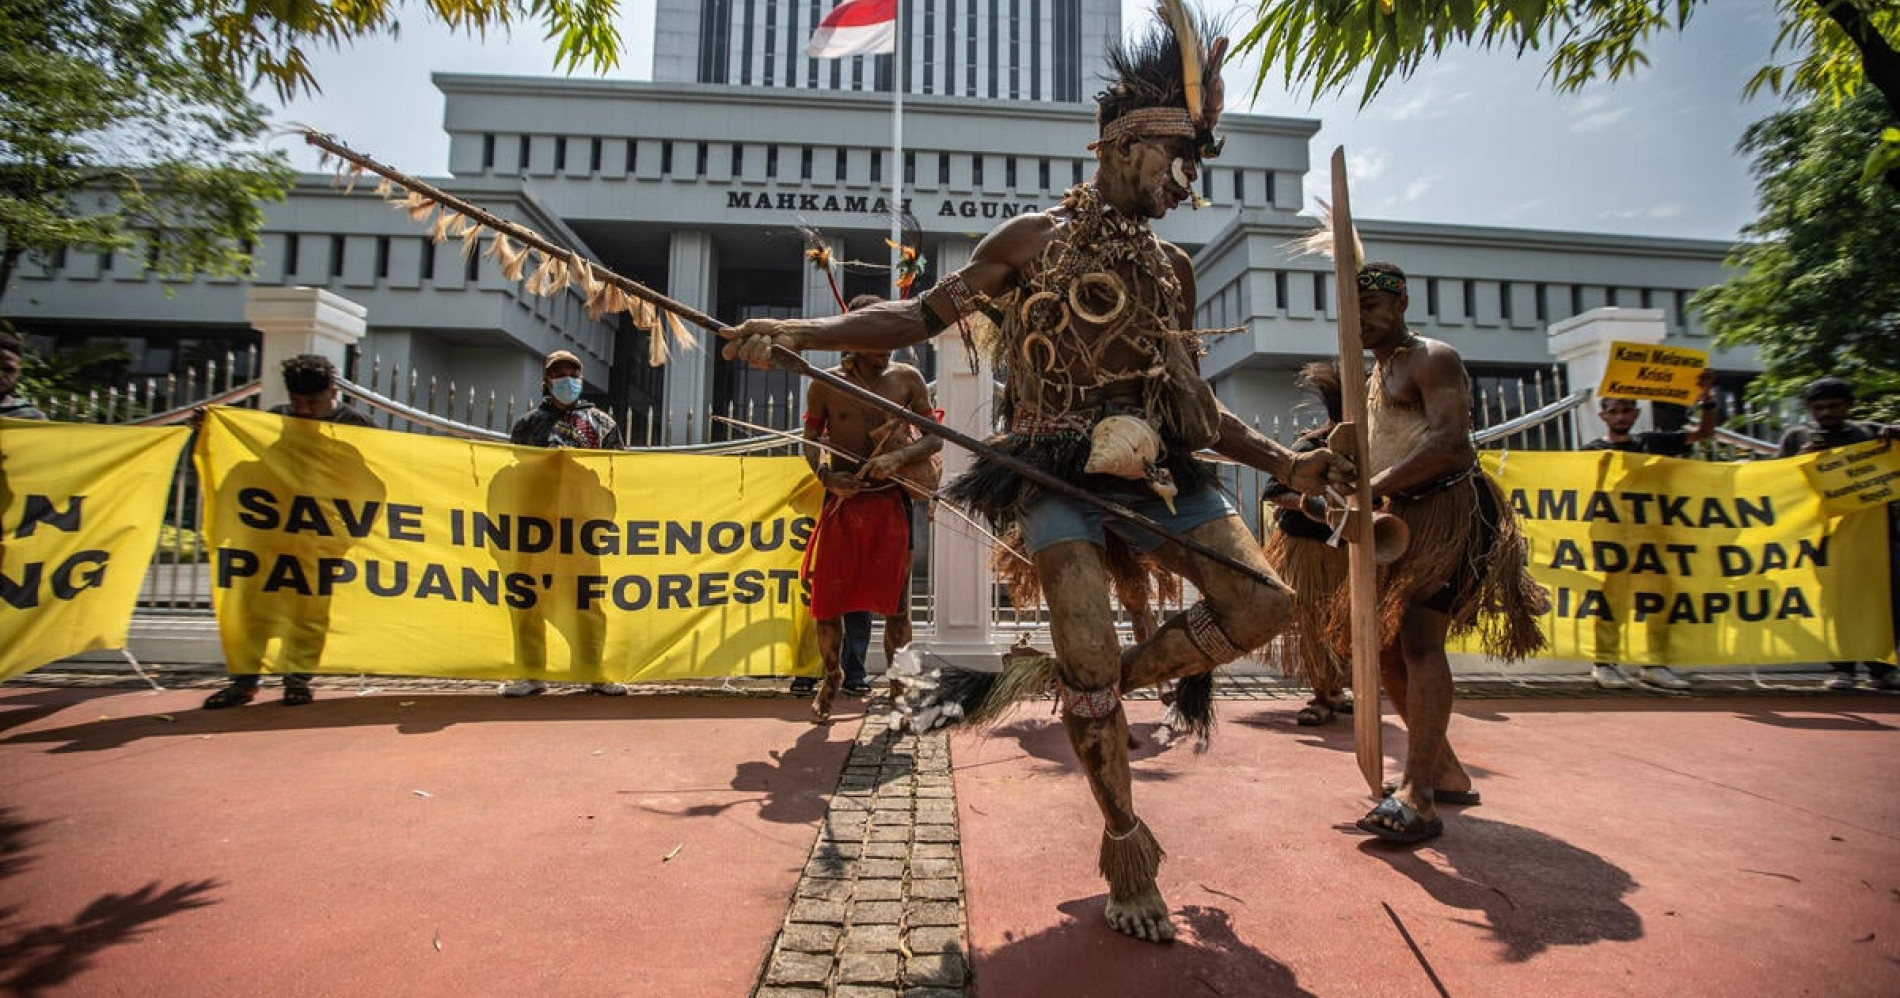 Aksi demonstrasi masyarakat Papua di depan MA untuk selamatkan hutan adat (Sumber gambar: Greenpeace)